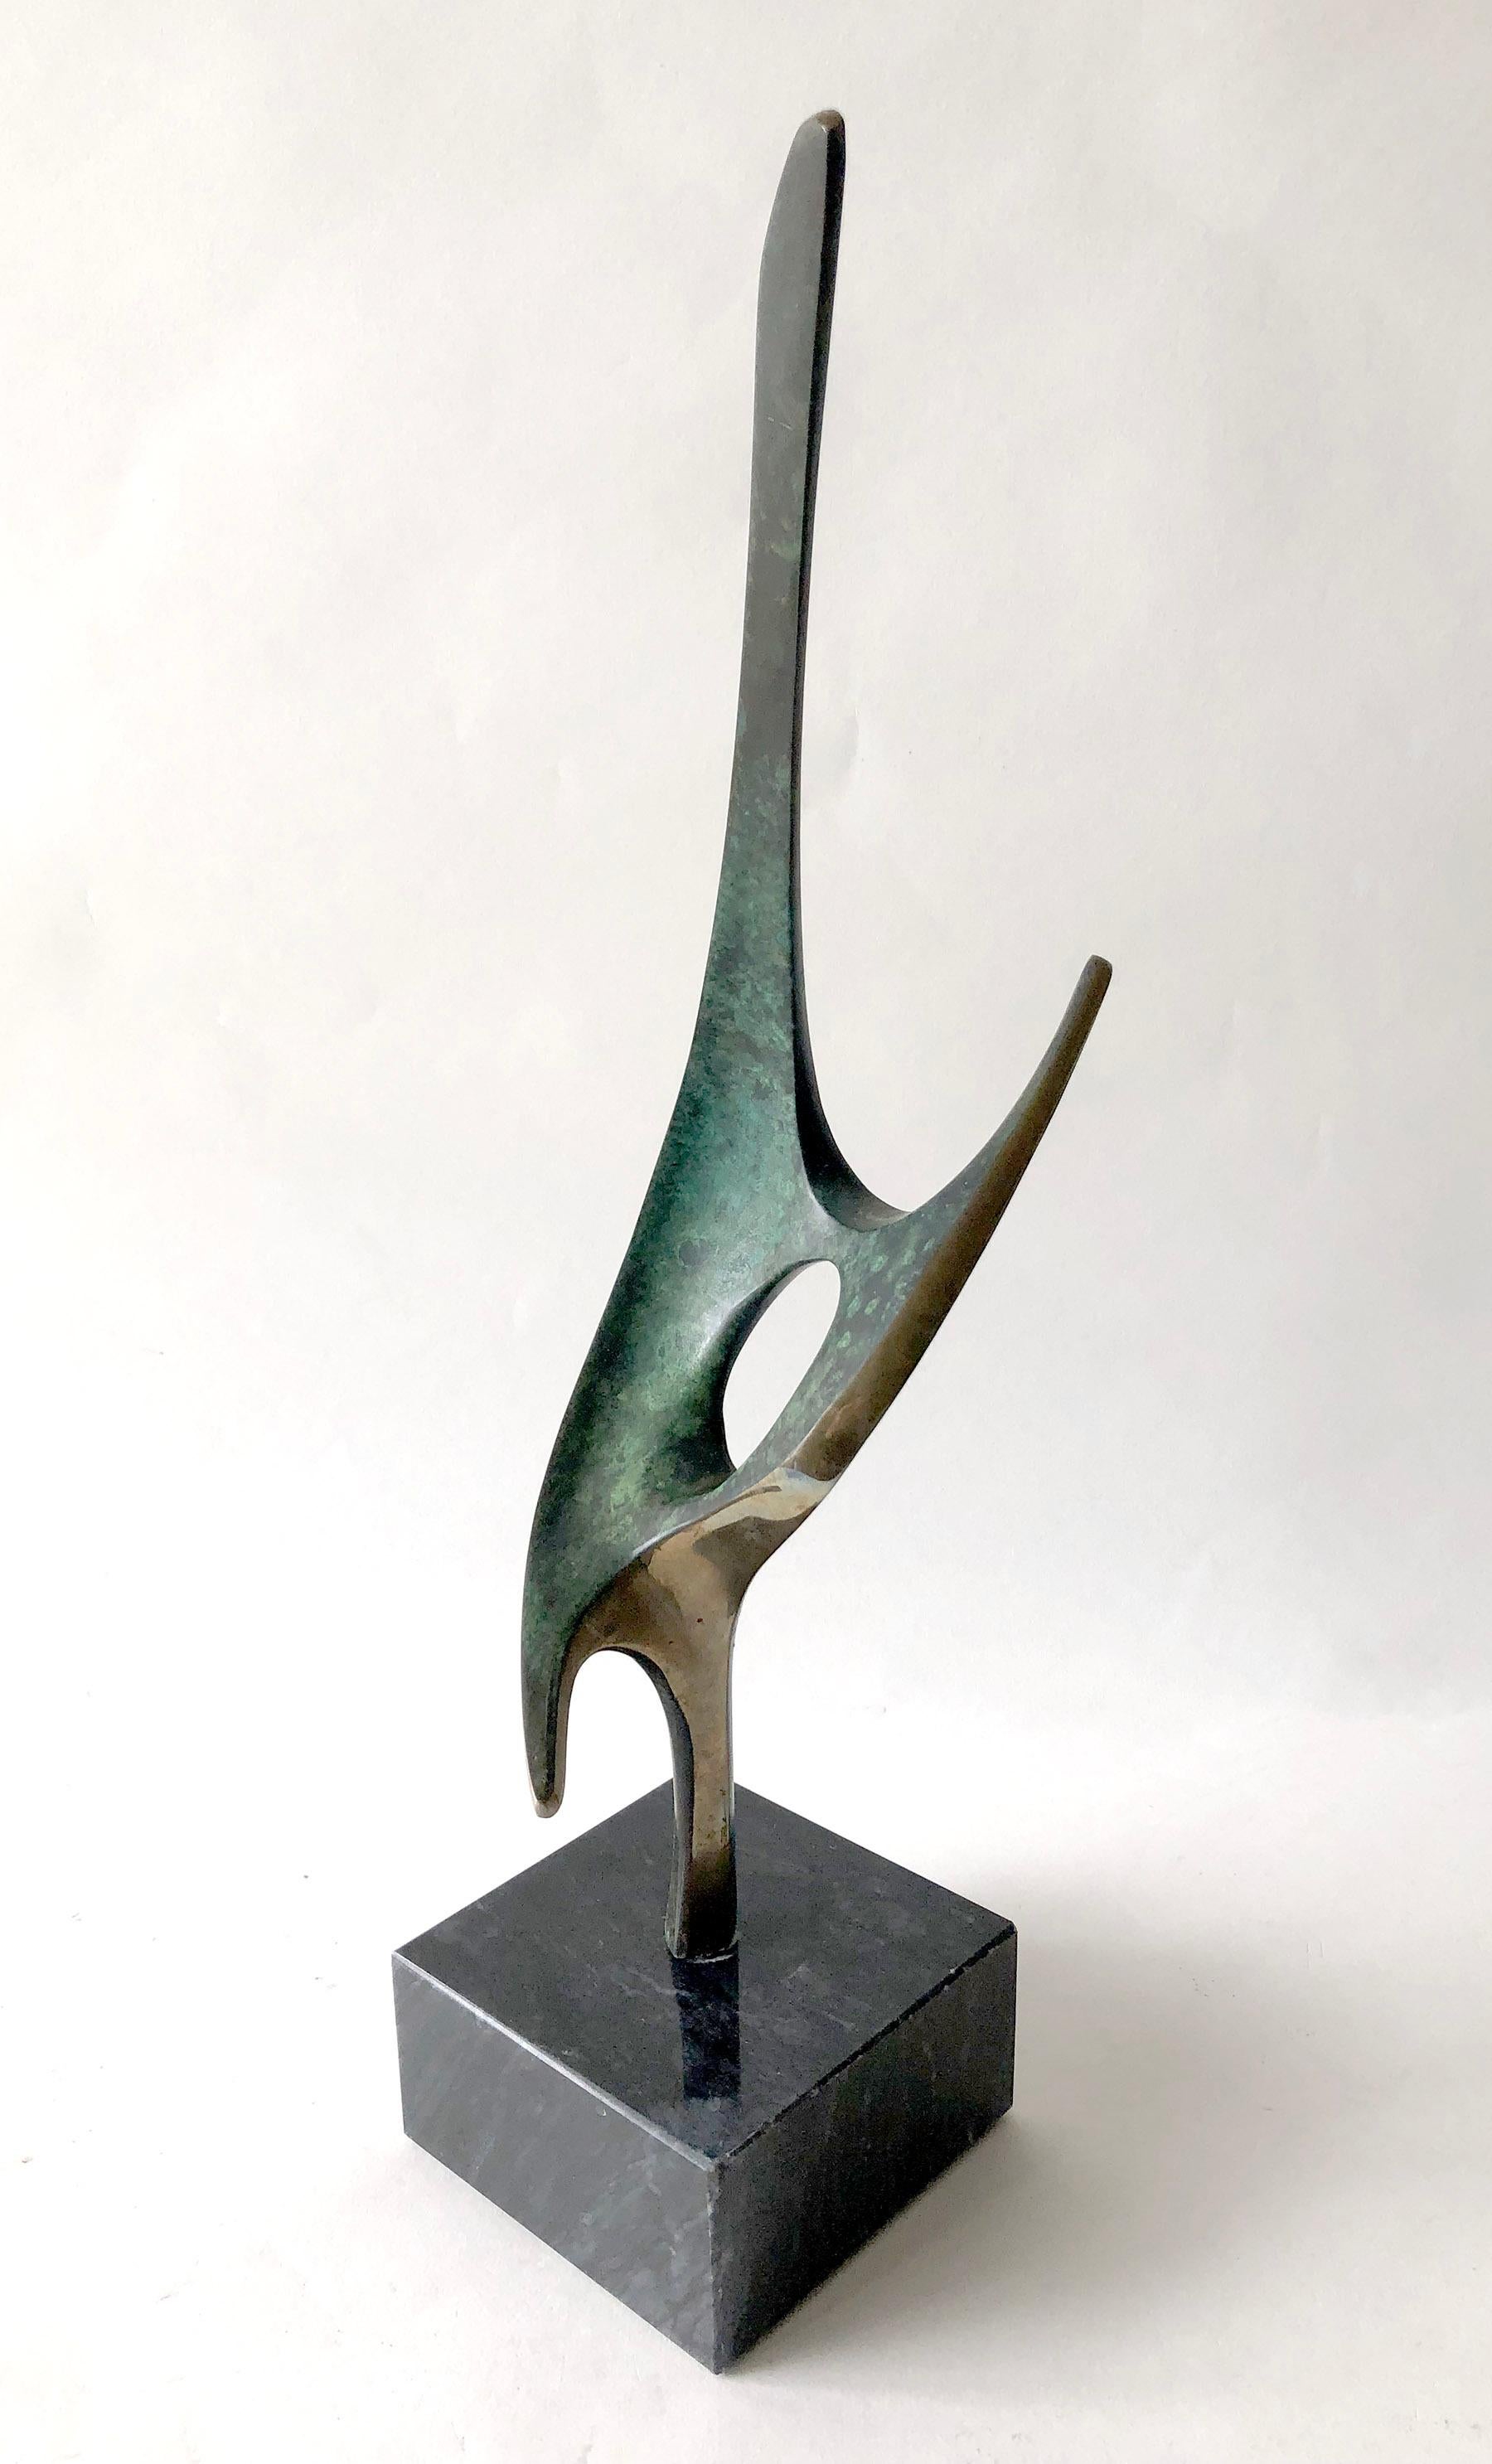 Abstract bronze sculpture by listed artist Bob Bennett, circa 1990. Sculpture measures 17